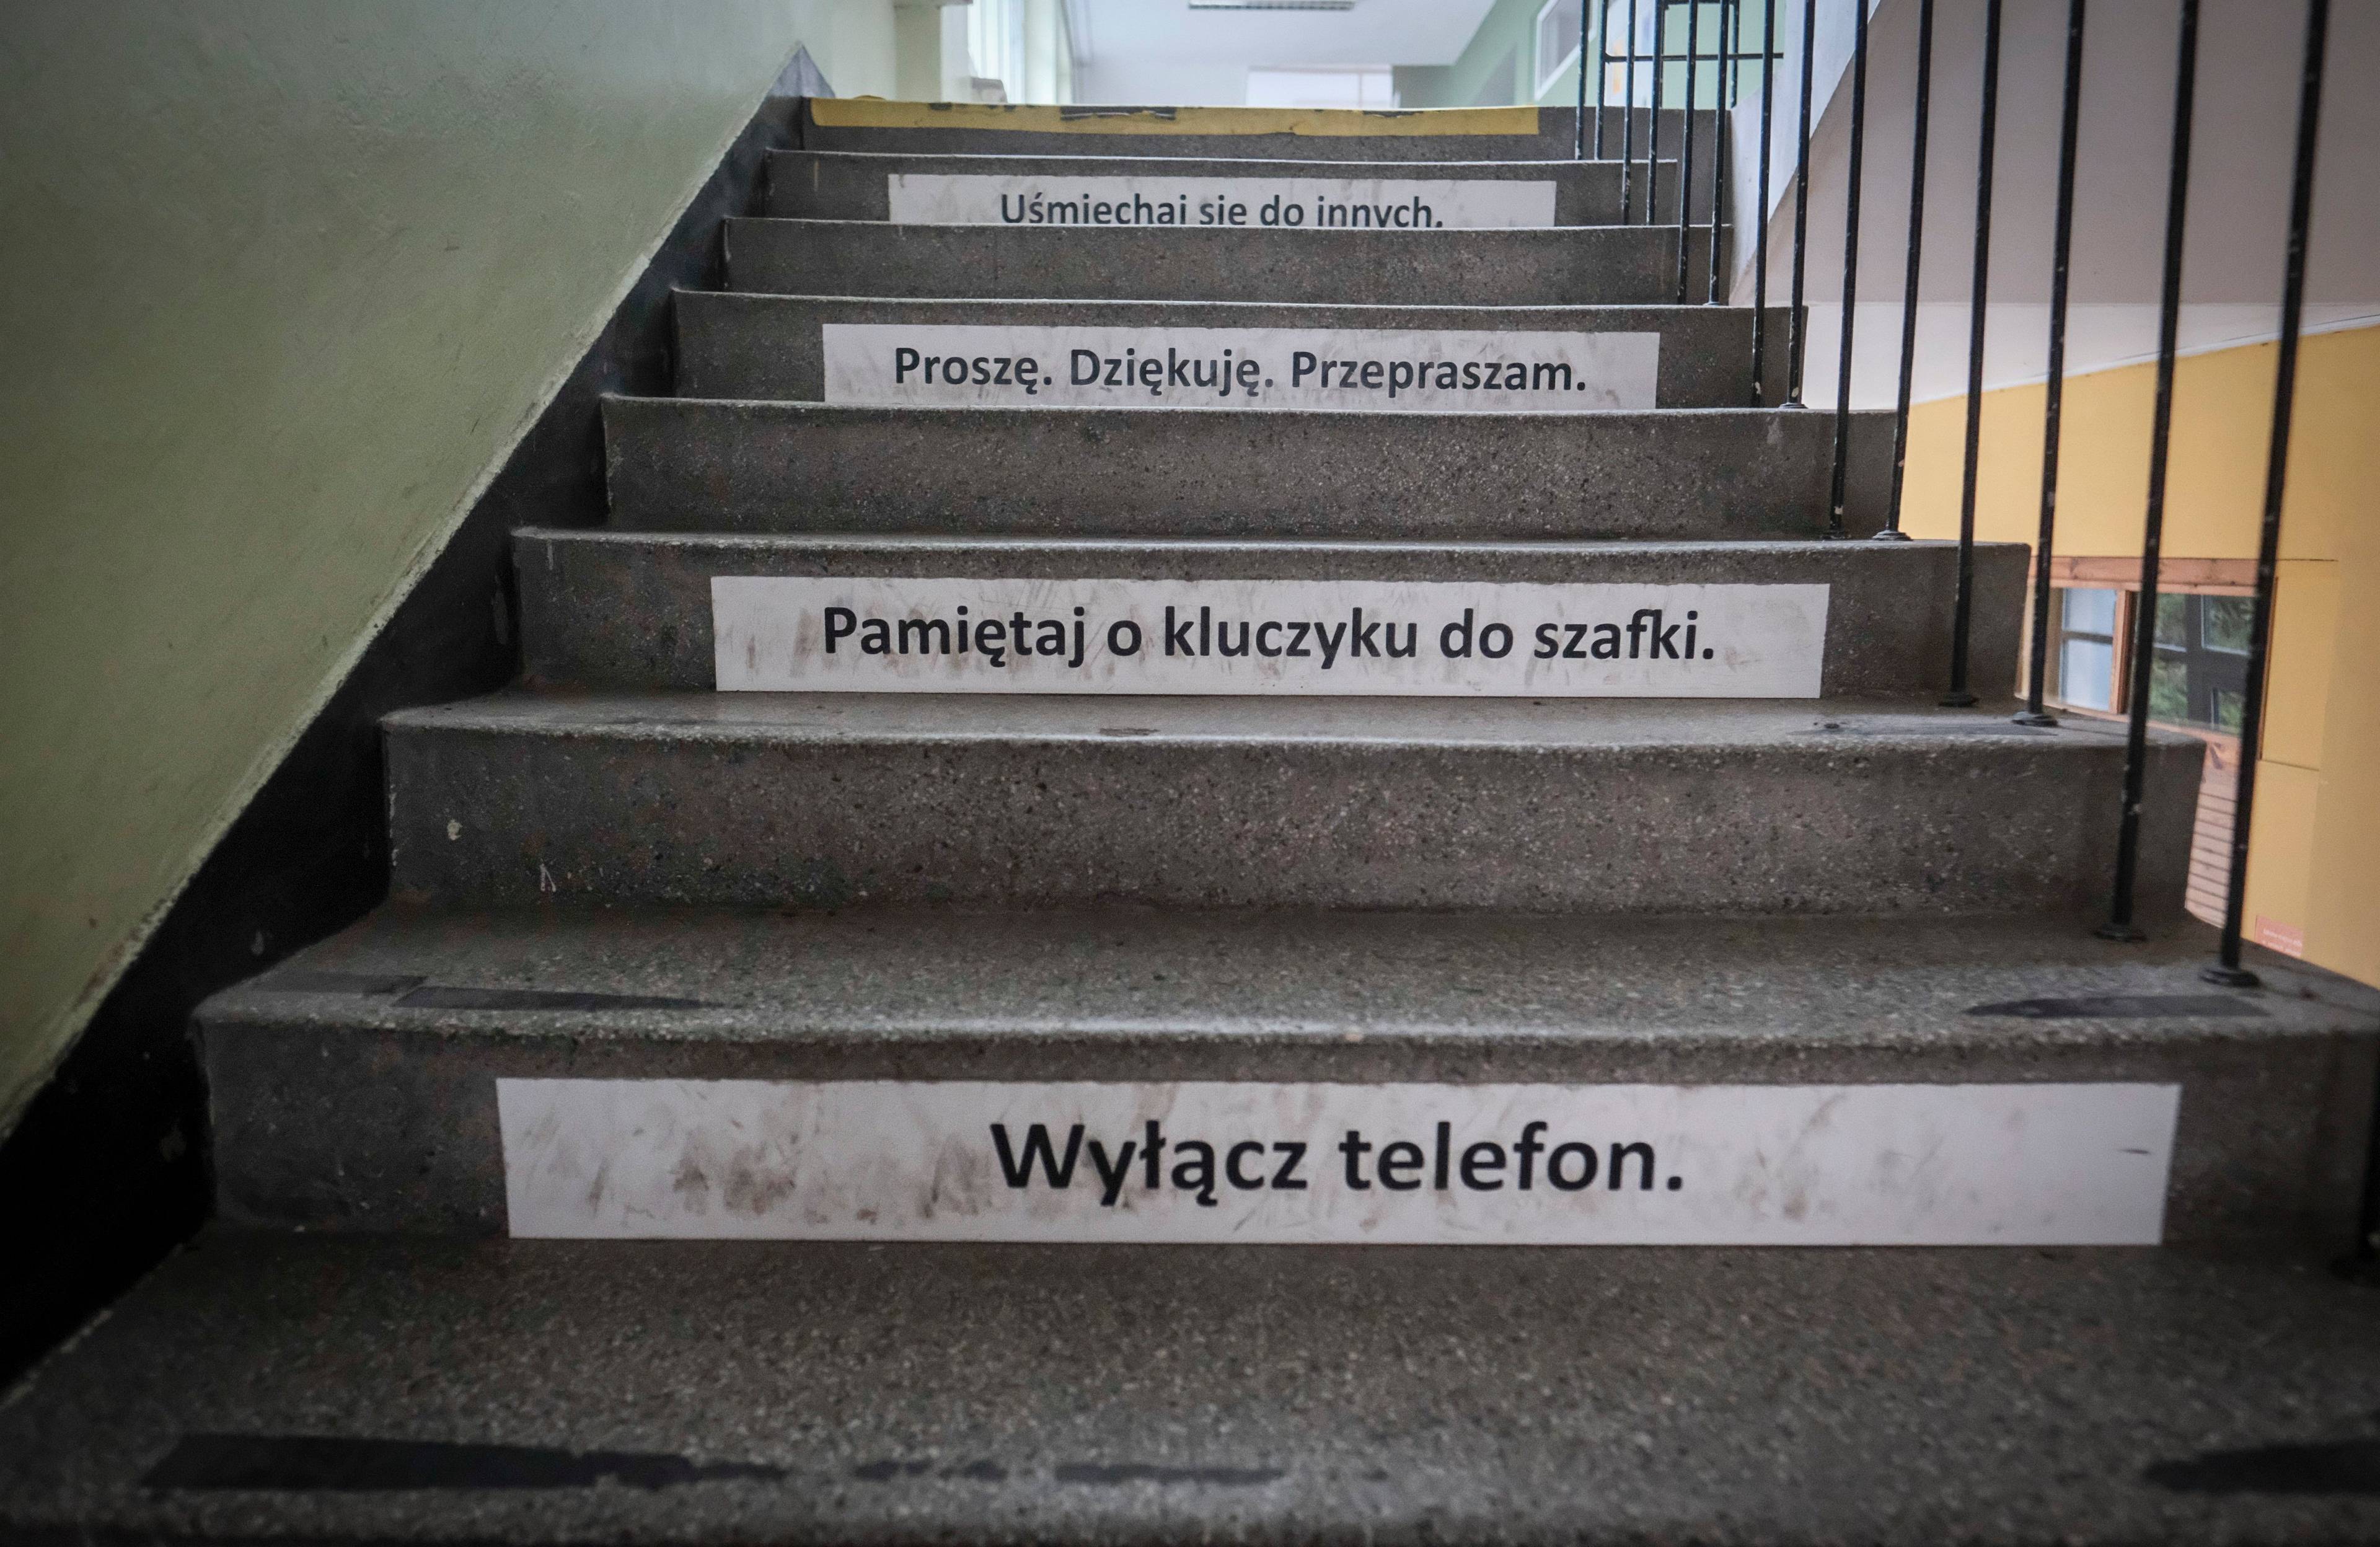 schody z wypisanymi hasłami, m.in. „wyłącz telefon"